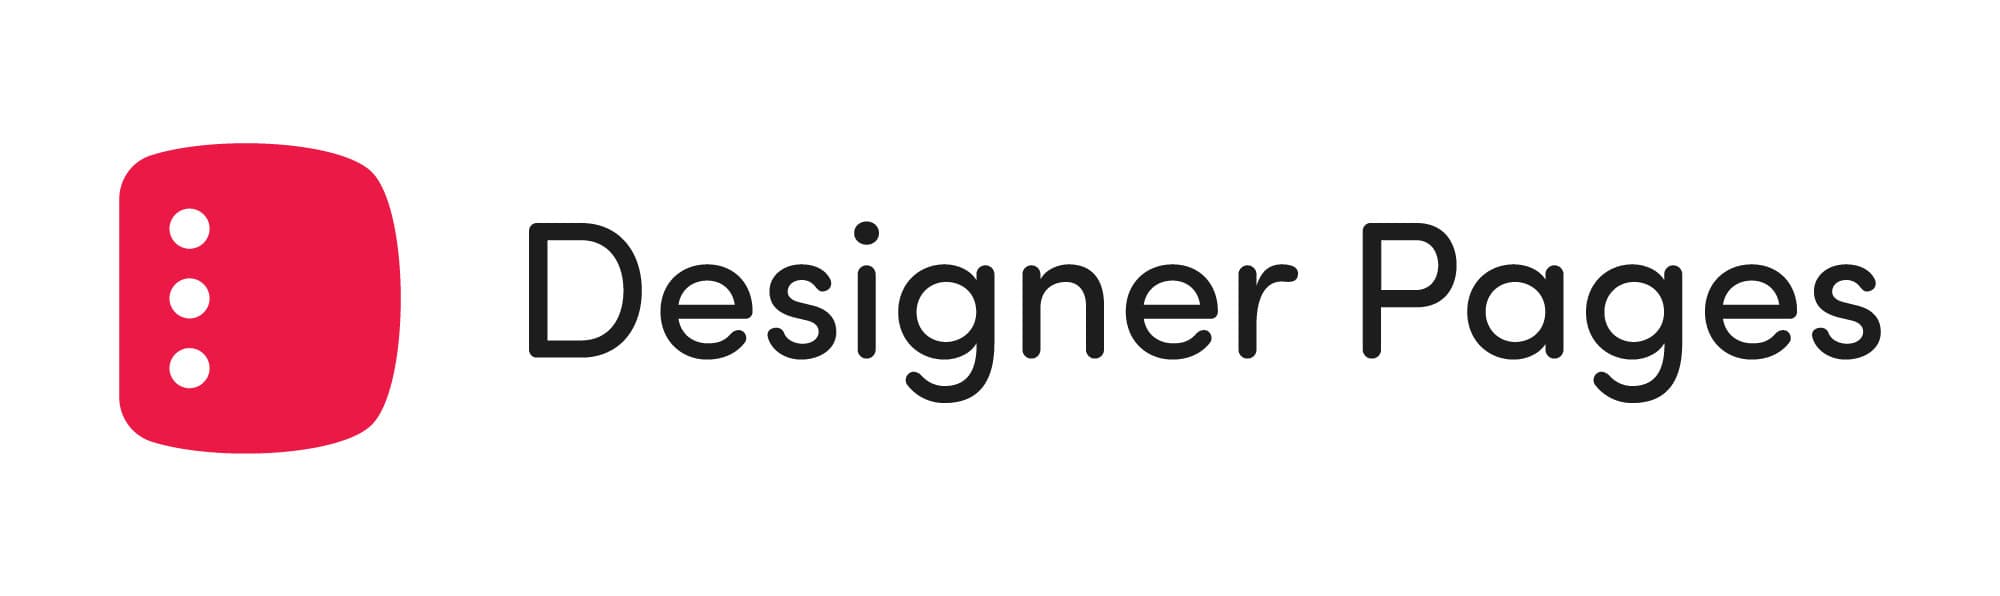 Designer Pages